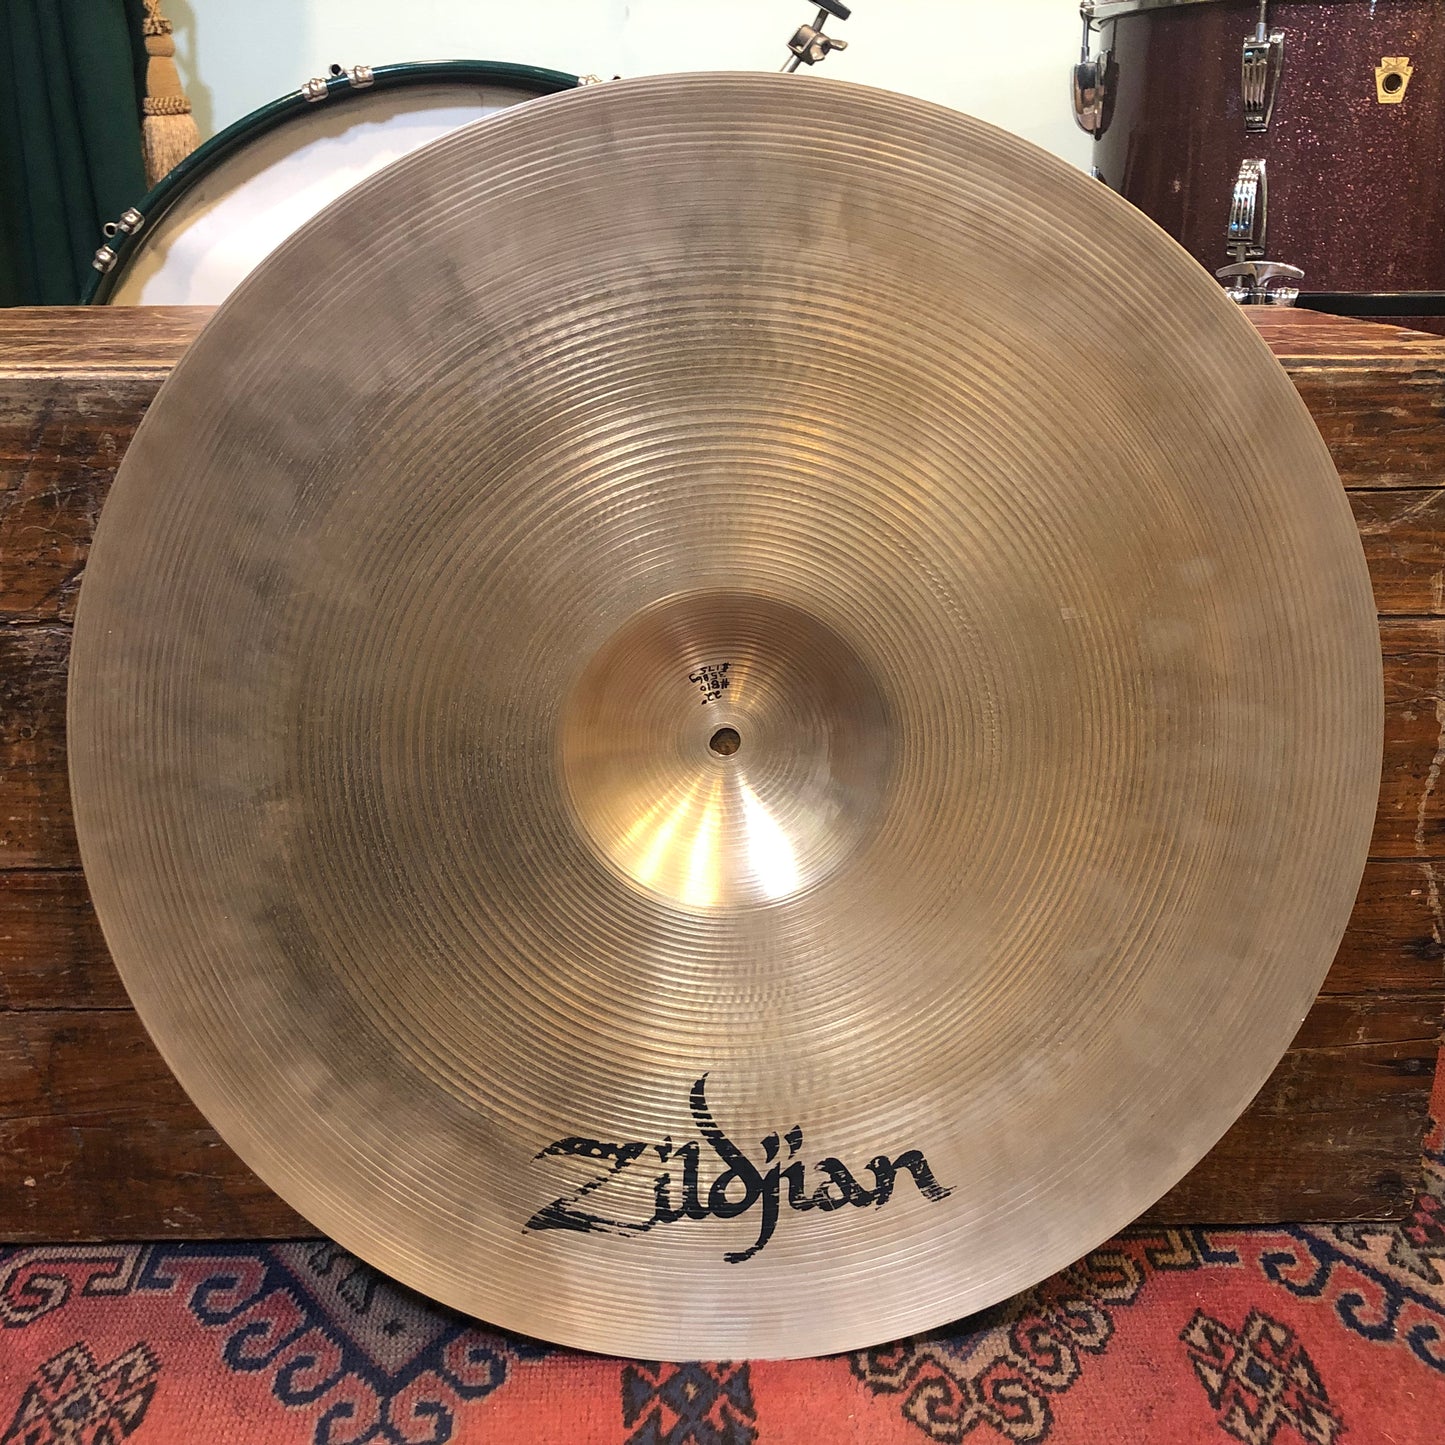 22" Zildjian A 1980s Ping Ride Cymbal 3586g #810